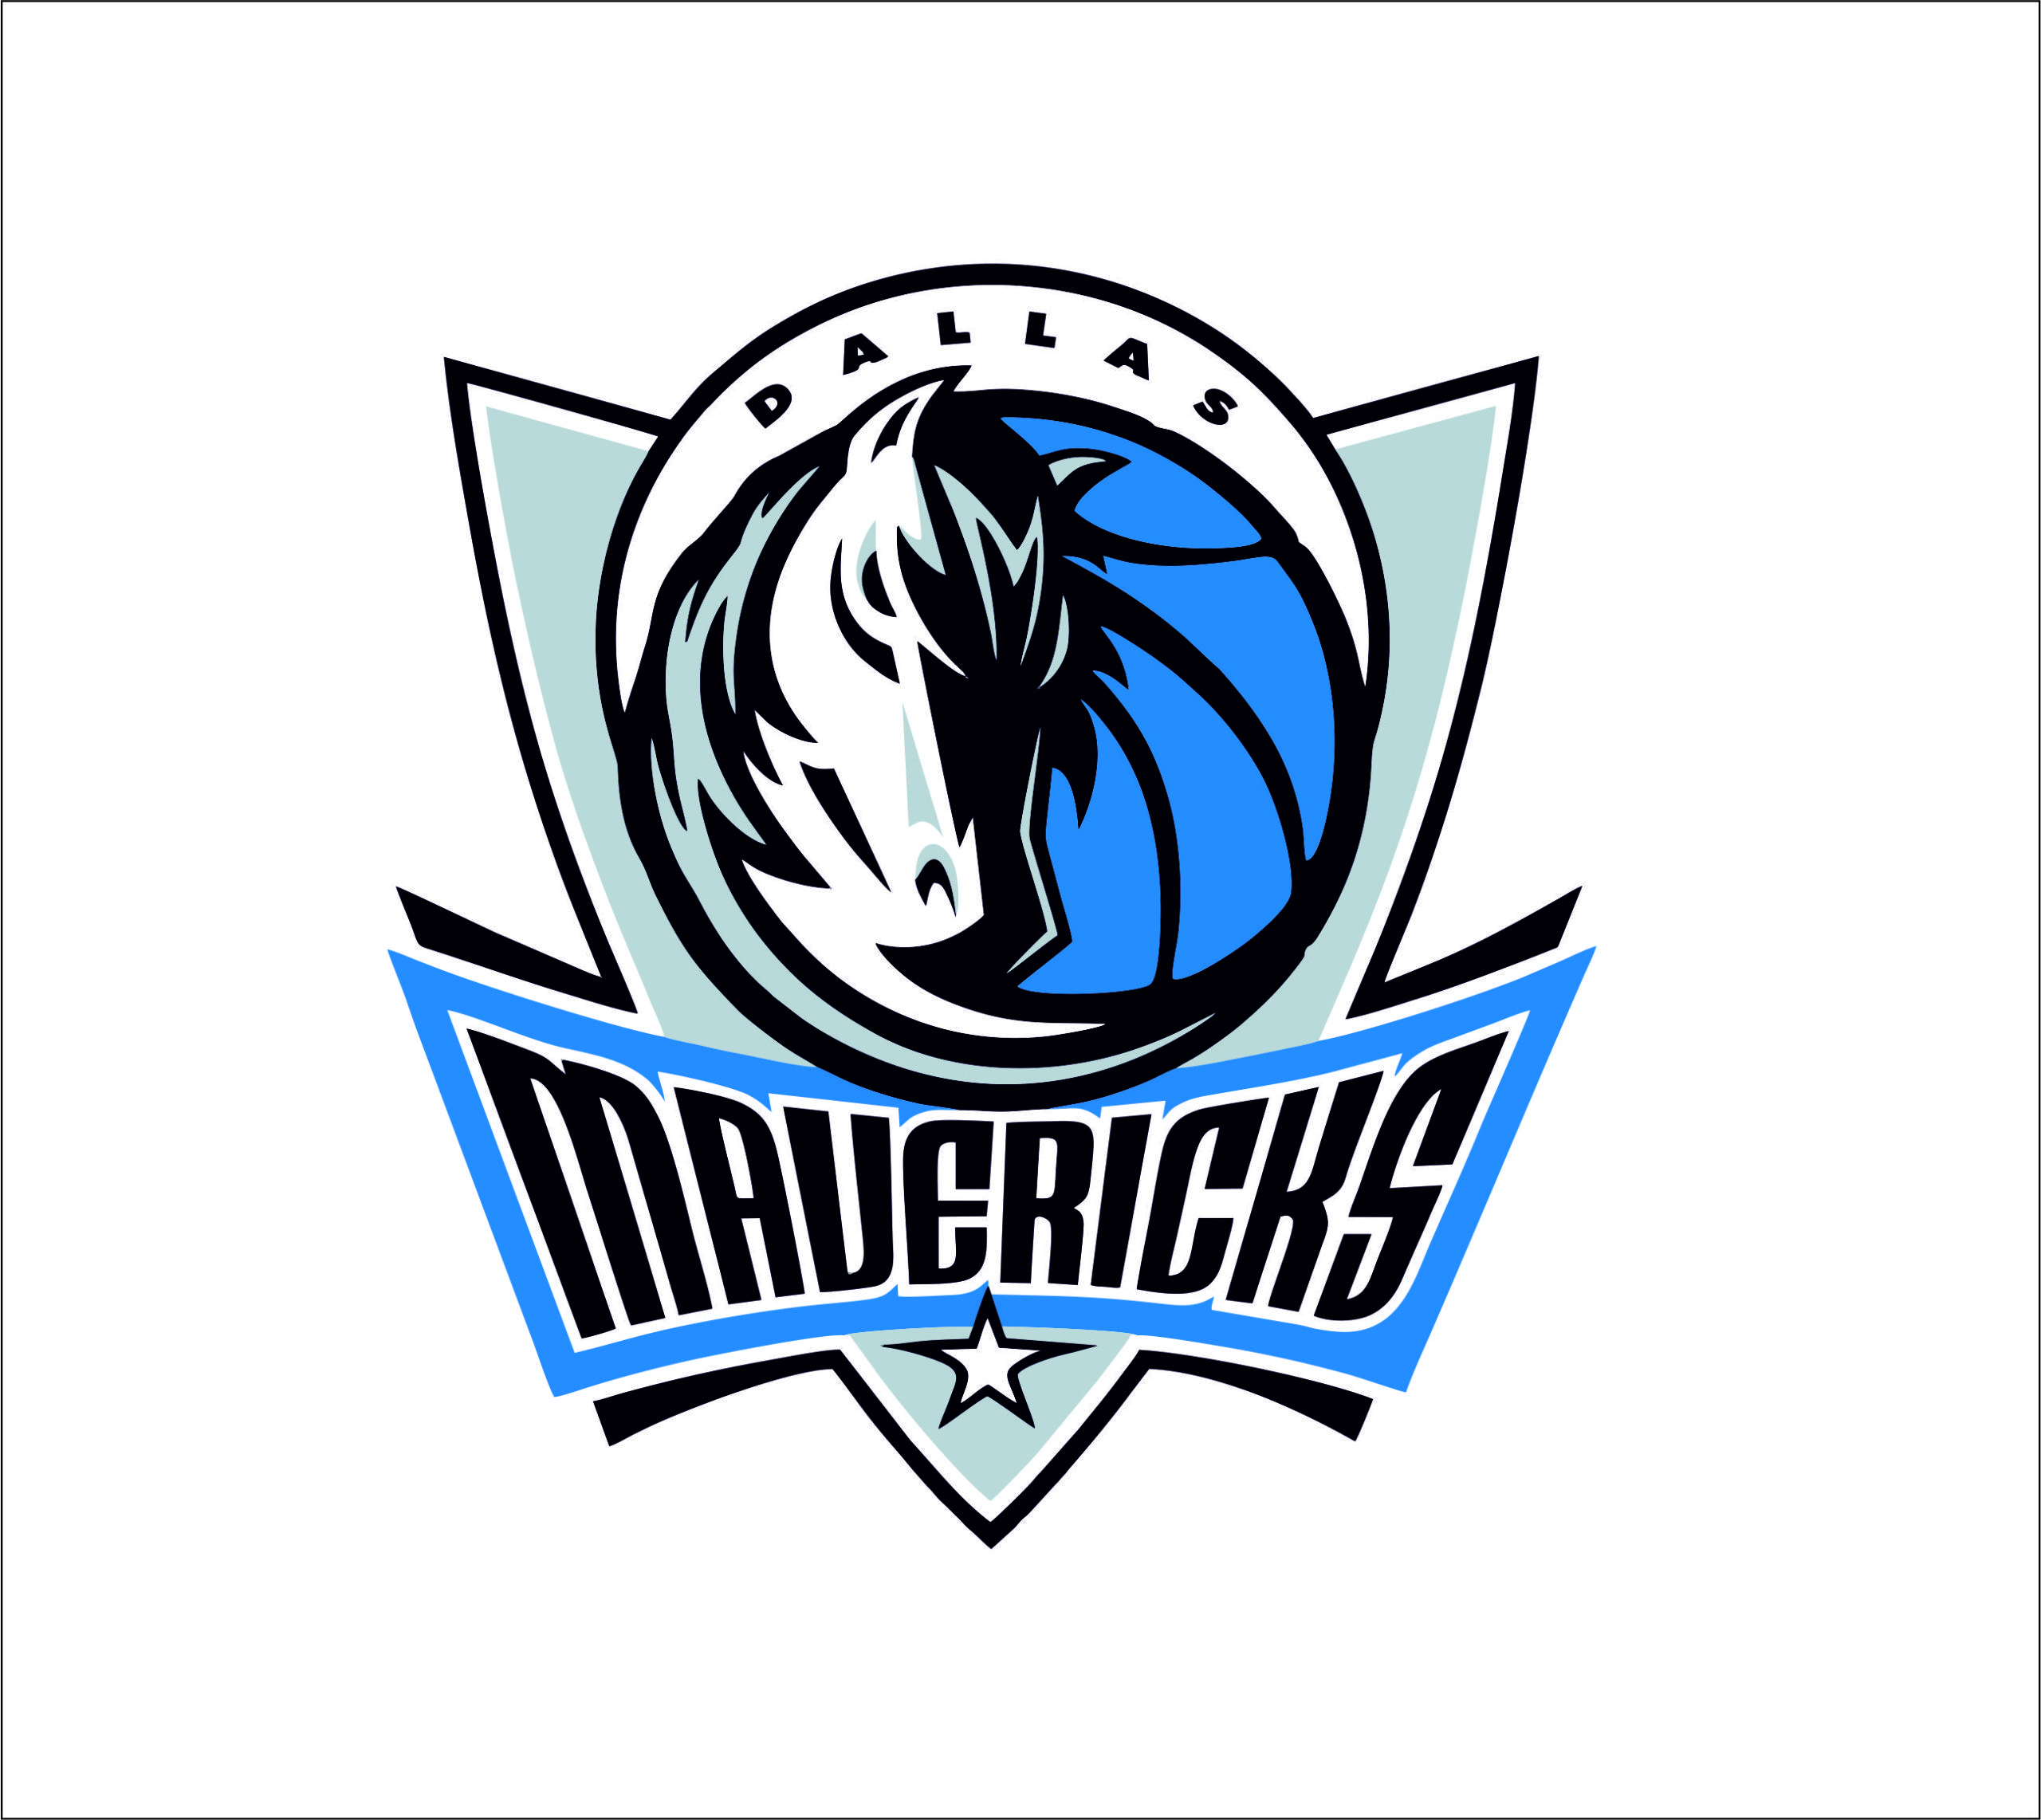 mavericks logo